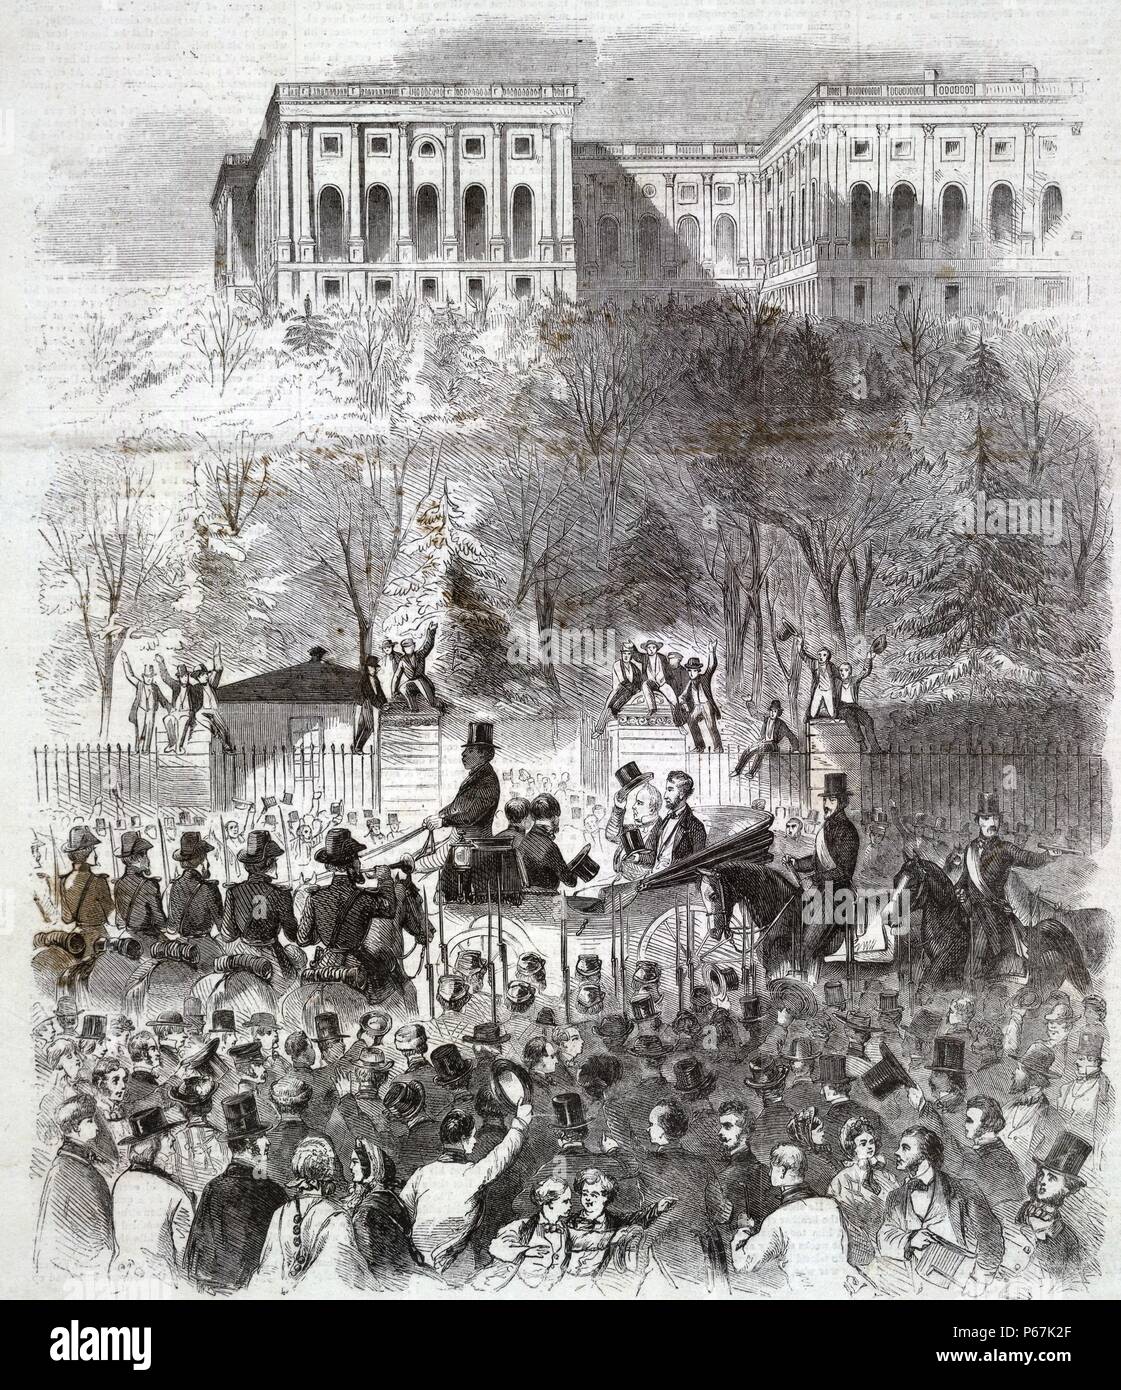 La processione inaugurale a Washington passando il cancello del Campidoglio motivi" presidente-eletto Lincoln e Presidente Buchanan (il suo ribaltamento top hat) tra il tifo folla prima di west gate a base di motivi Capitol, sul loro modo al Campidoglio per Lincoln prima dell'inaugurazione. Foto Stock